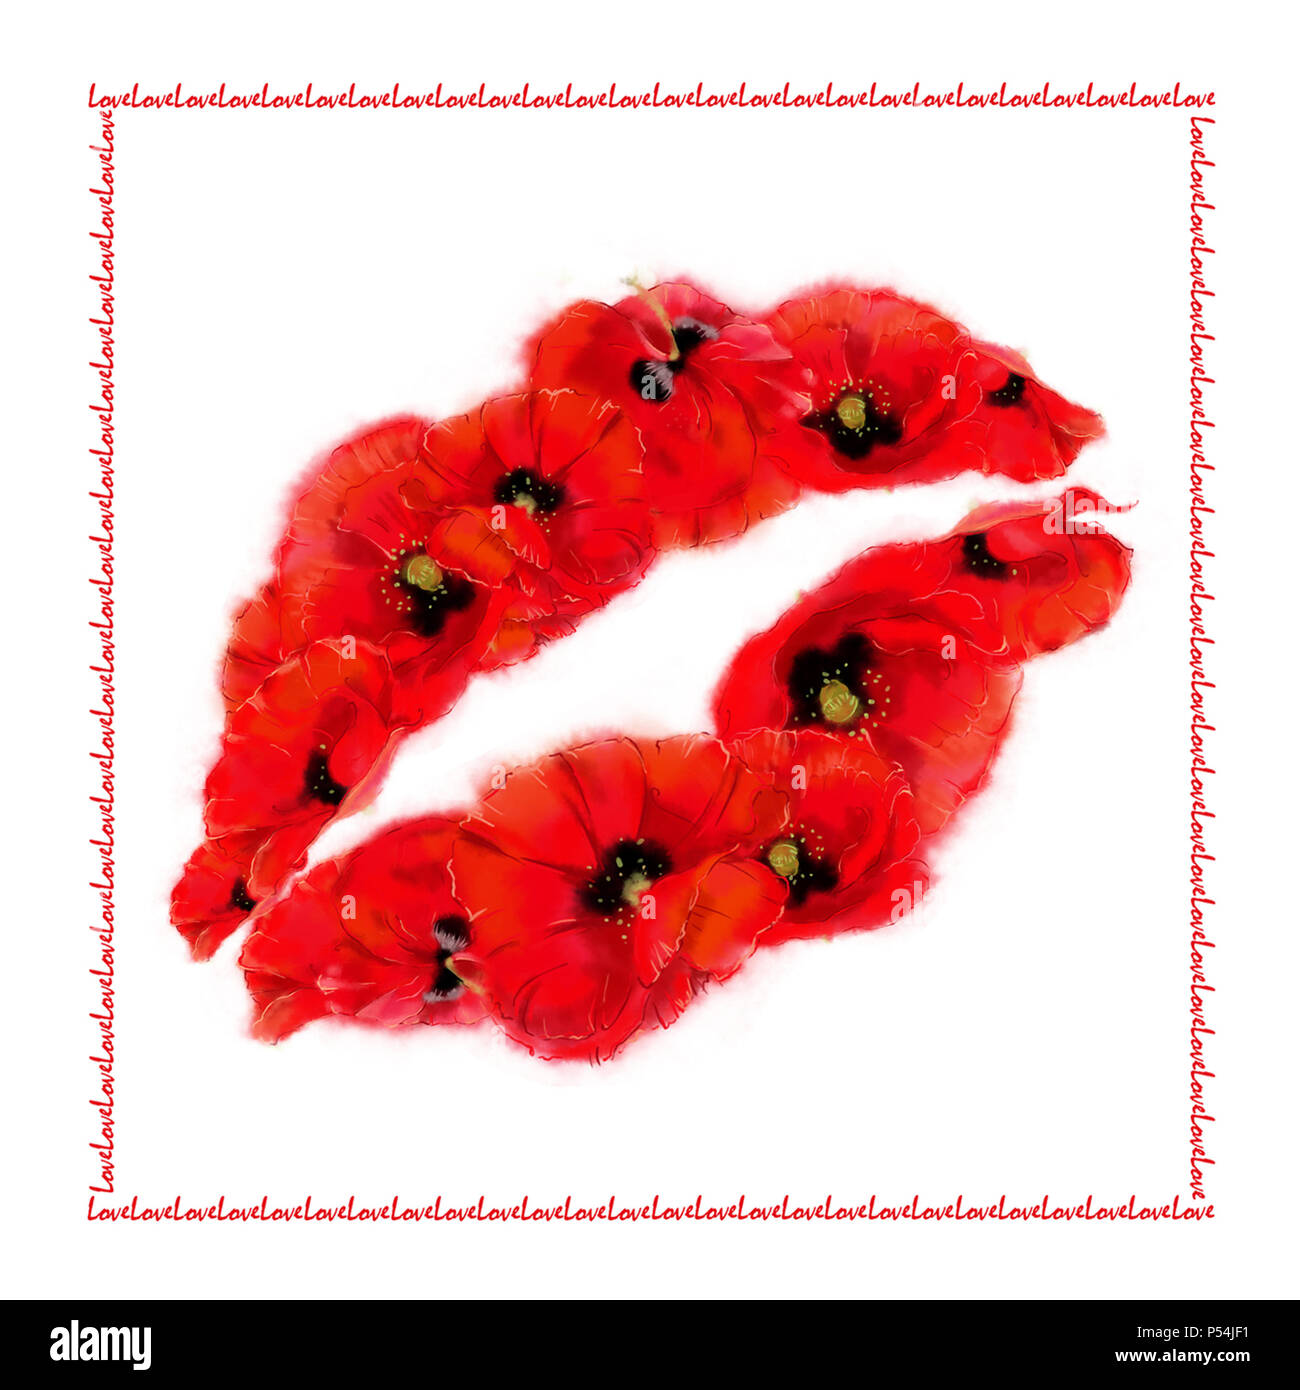 Lèvres coquelicot Carte carré sur fond blanc avec message d'amour à la périphérie. Floral flambant rouge lèvres pour la carte, affiche, annonce publicitaire, etc. Banque D'Images